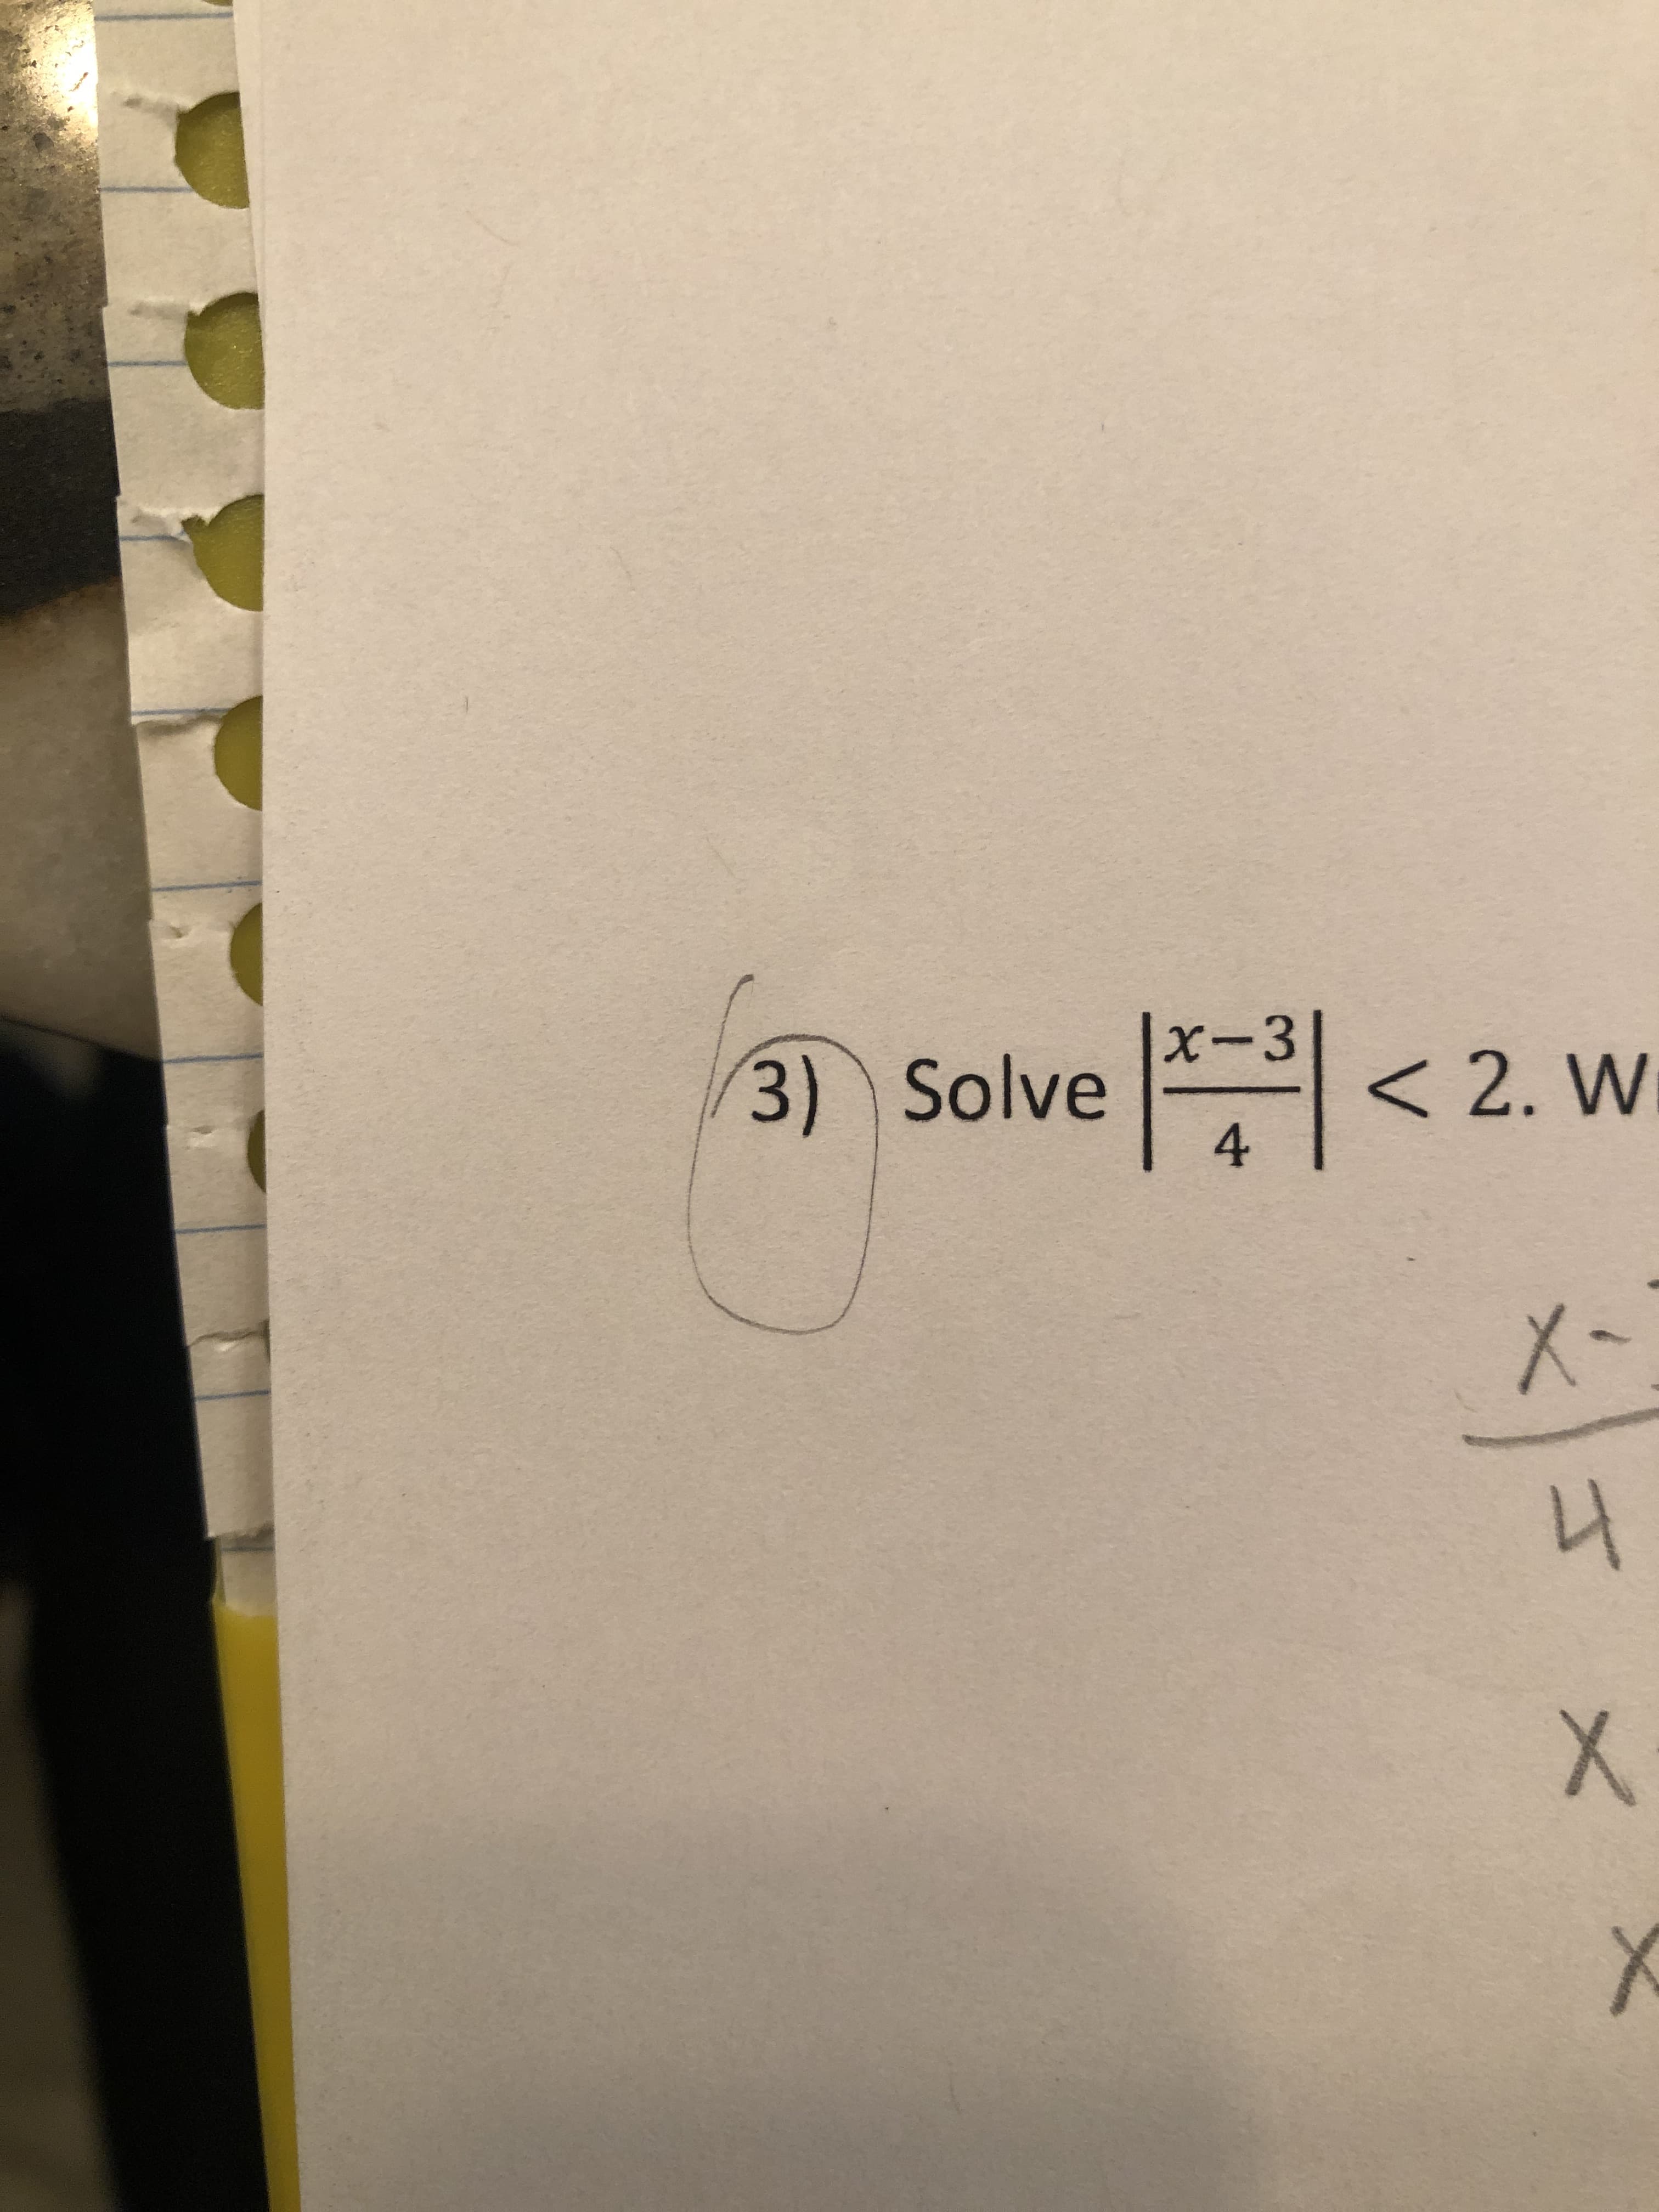 X-3
3) Solve 의 < 2. W
X-
니 X
4.
